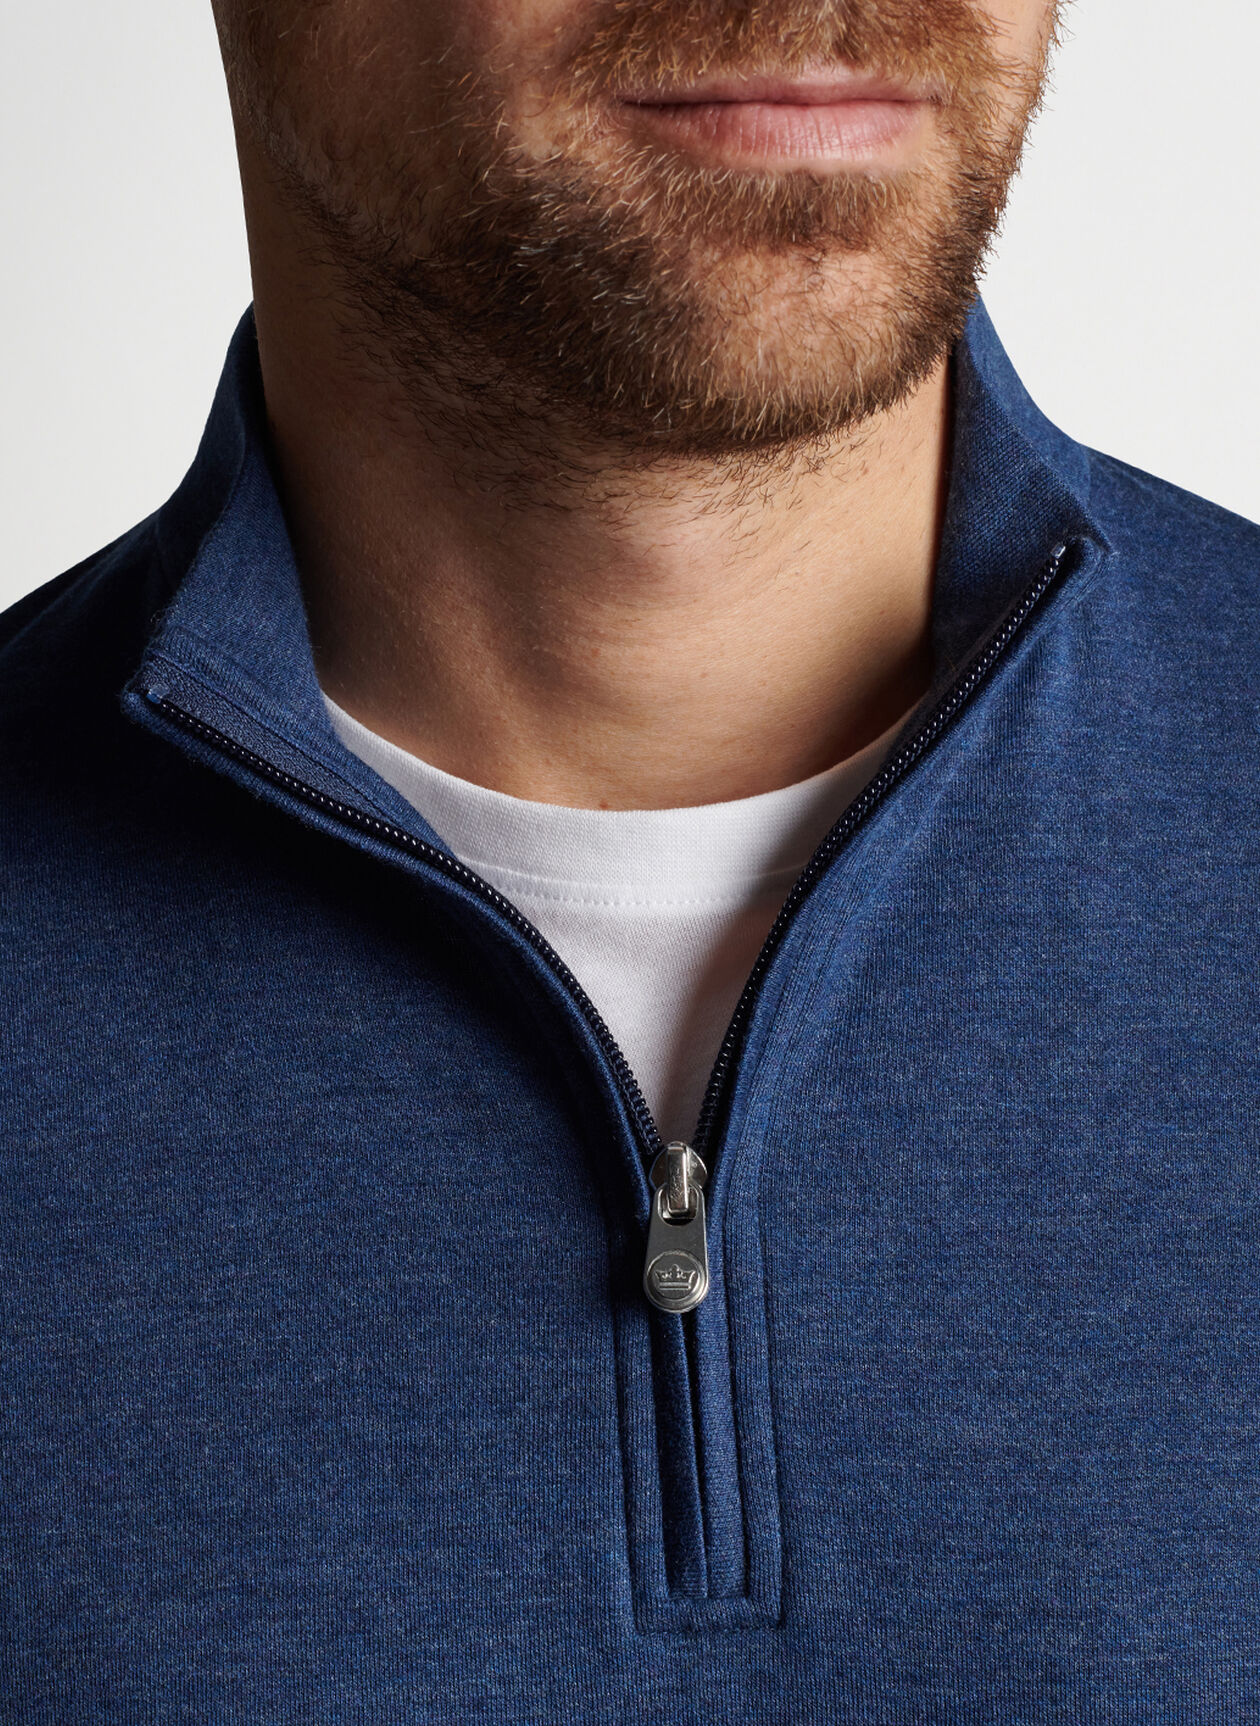 Crown Comfort Interlock Quarter-Zip | Men's Pullovers & T-Shirts ...